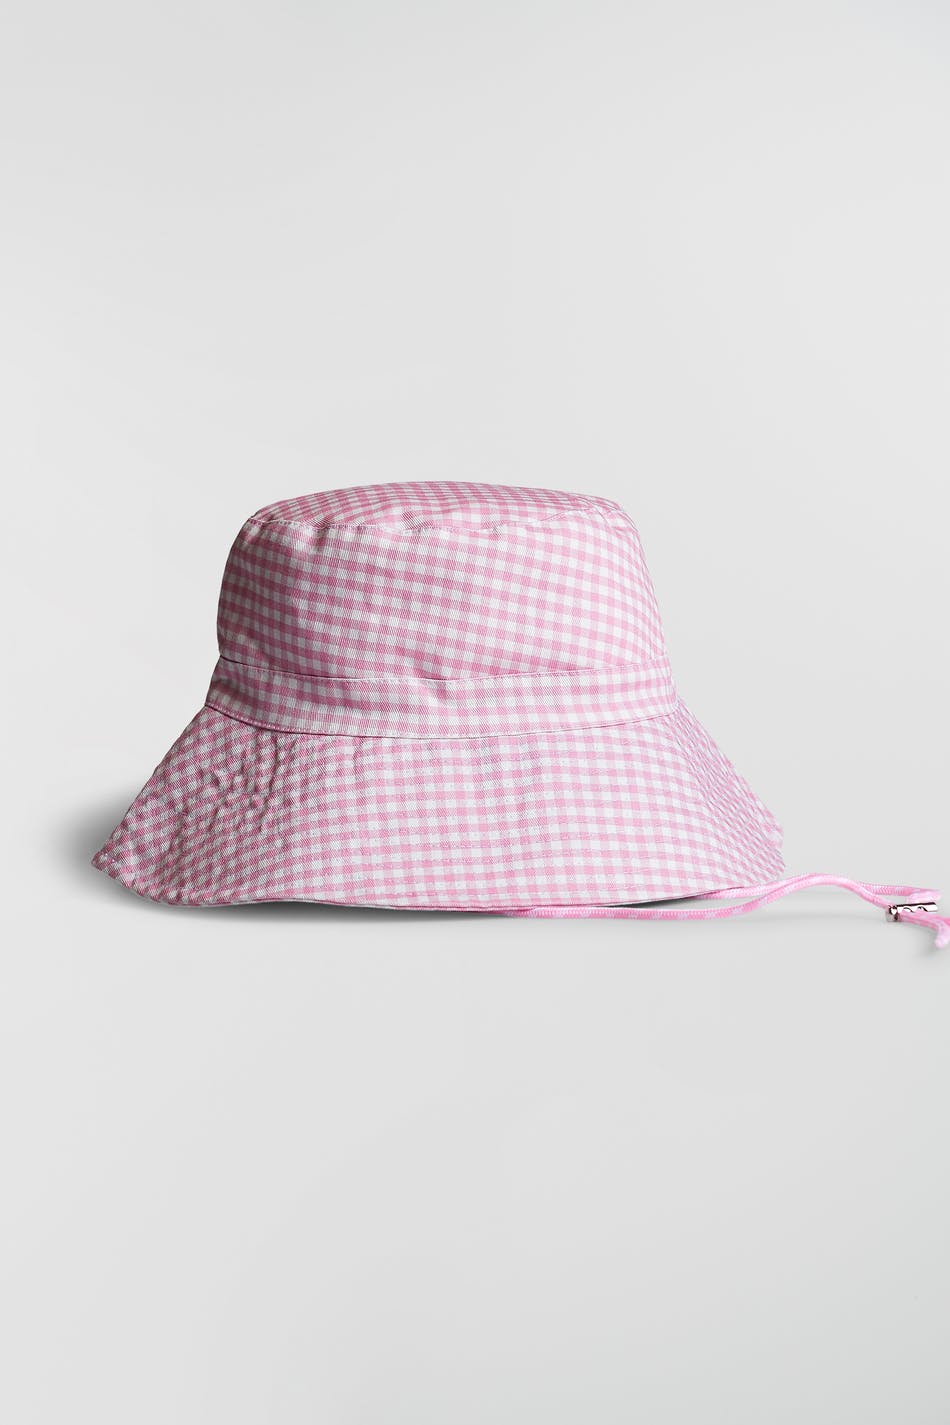 Gina Tricot Elsie bucket hat ONESZ  Pink/gingham (3978)